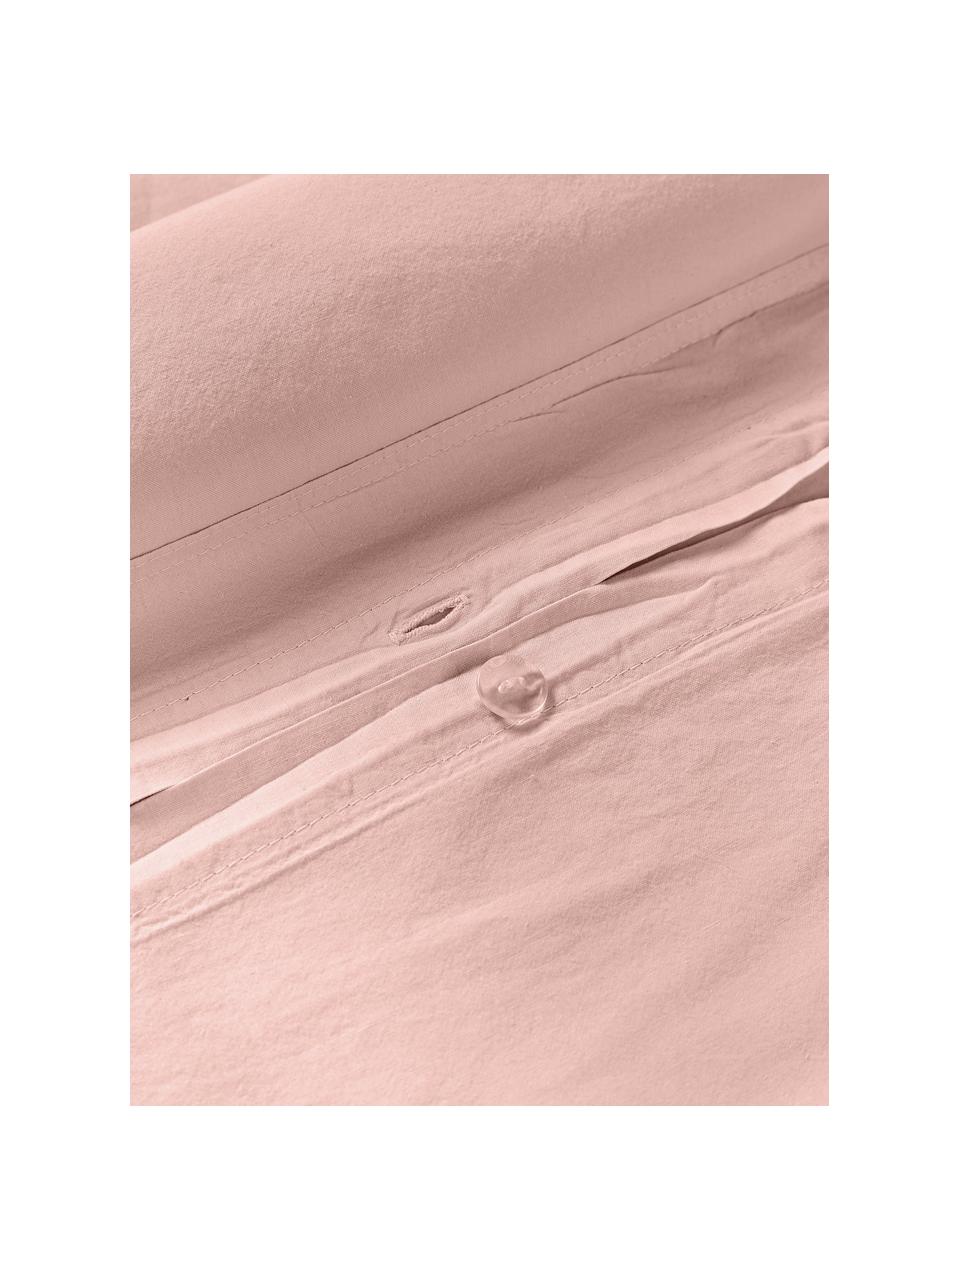 Copripiumino in cotone lavato Darlyn, 100% cotone
Densità dei fili 150, qualità standard

La biancheria da letto in cotone è piacevolmente morbida sulla pelle, assorbe bene l'umidità ed è adatta per chi soffre di allergie

Uno speciale processo di lavaggio conferisce al tessuto un aspetto stonewash robusto e irregolare. Questo rende anche il tessuto morbido ed elastico al tatto e gli conferisce un aspetto stropicciato naturale che non richiede stiratura e trasuda intimità.

Il materiale utilizzato in questo prodotto è testato per le sostanze nocive e certificato secondo lo STANDARD 100 by OEKO-TEX®, 4265CIT, CITEVE., Pesca, Larg. 200 x Lung. 200 cm